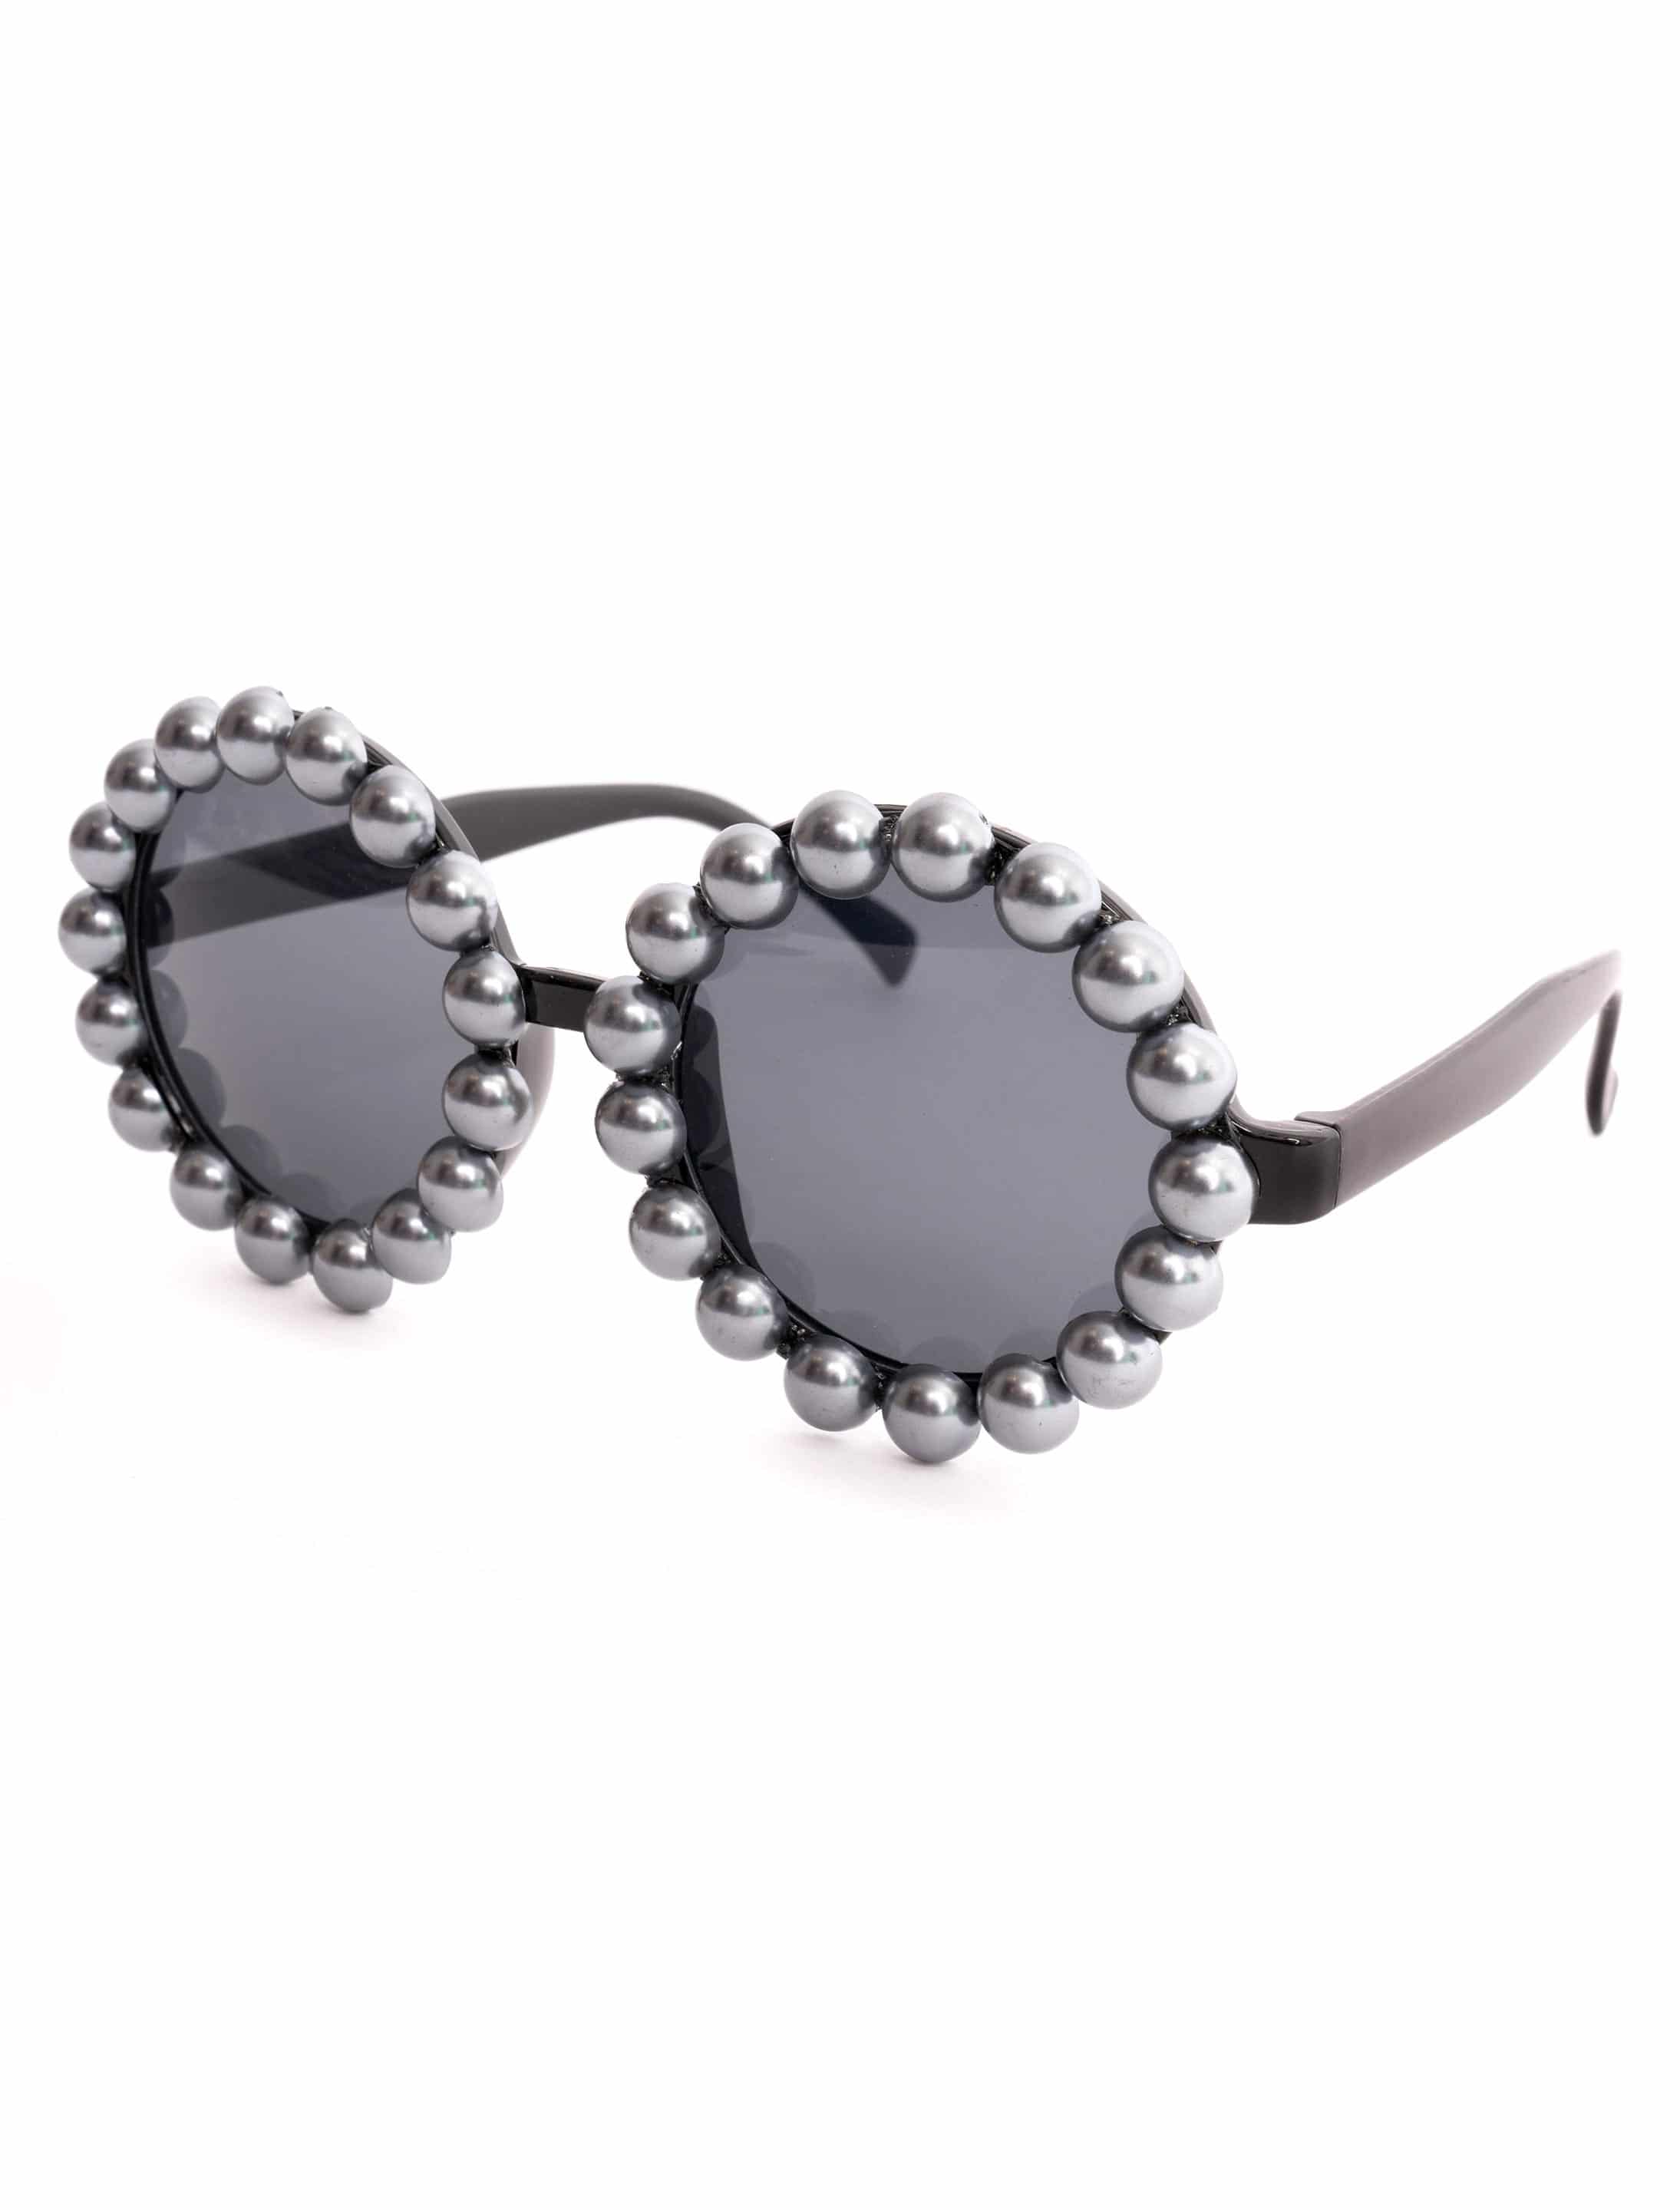 Brille rund mit Perlenrahmen grau